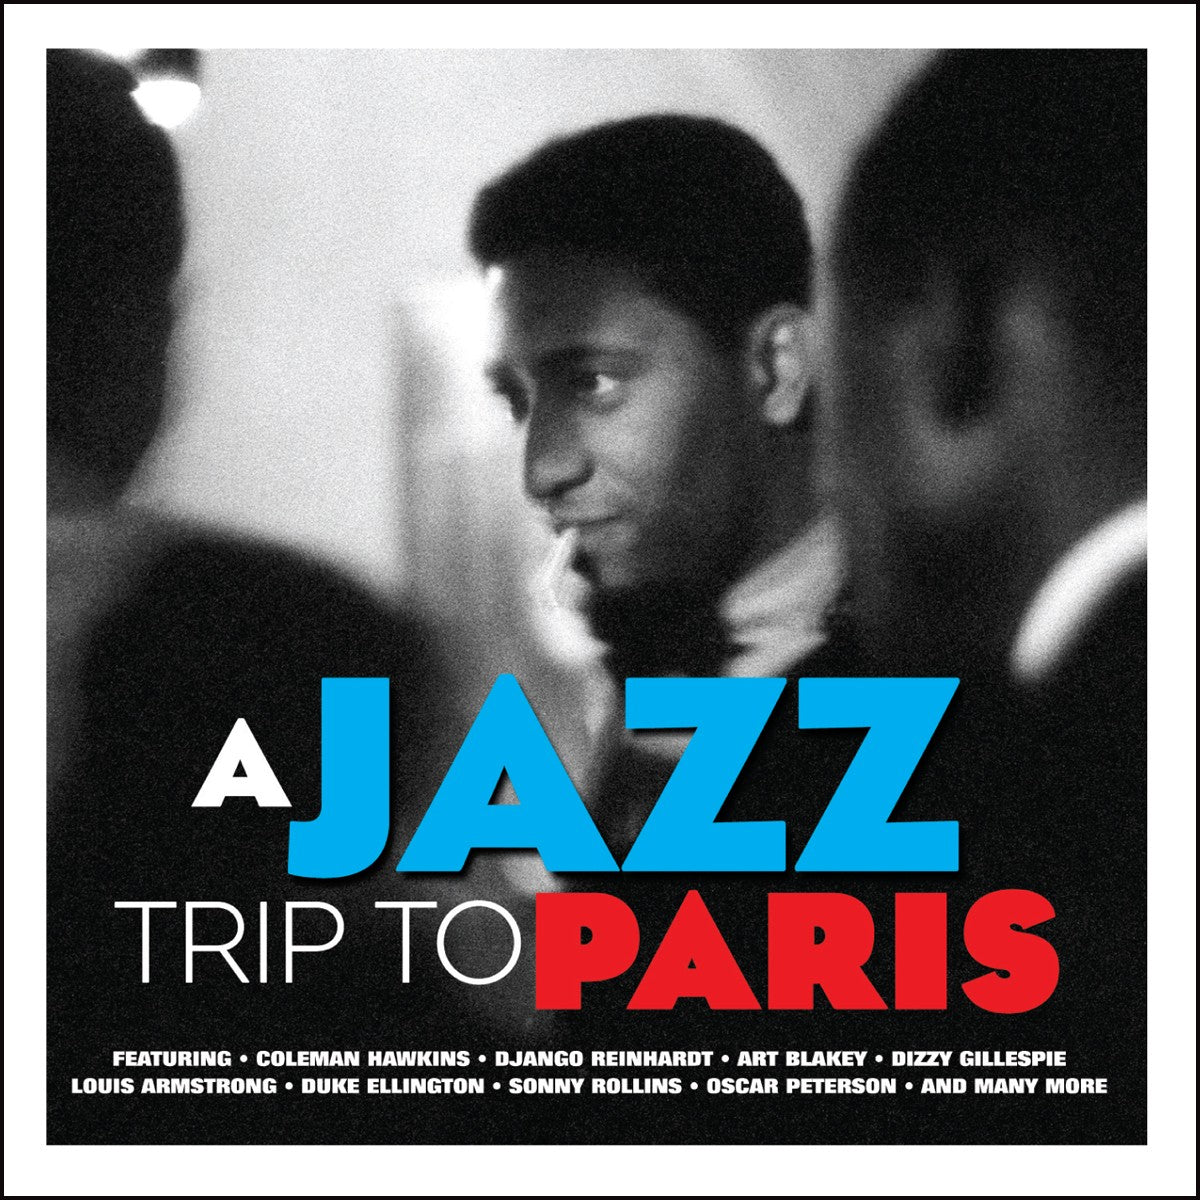 A JAZZ TRIP TO PARIS (2 CDS)